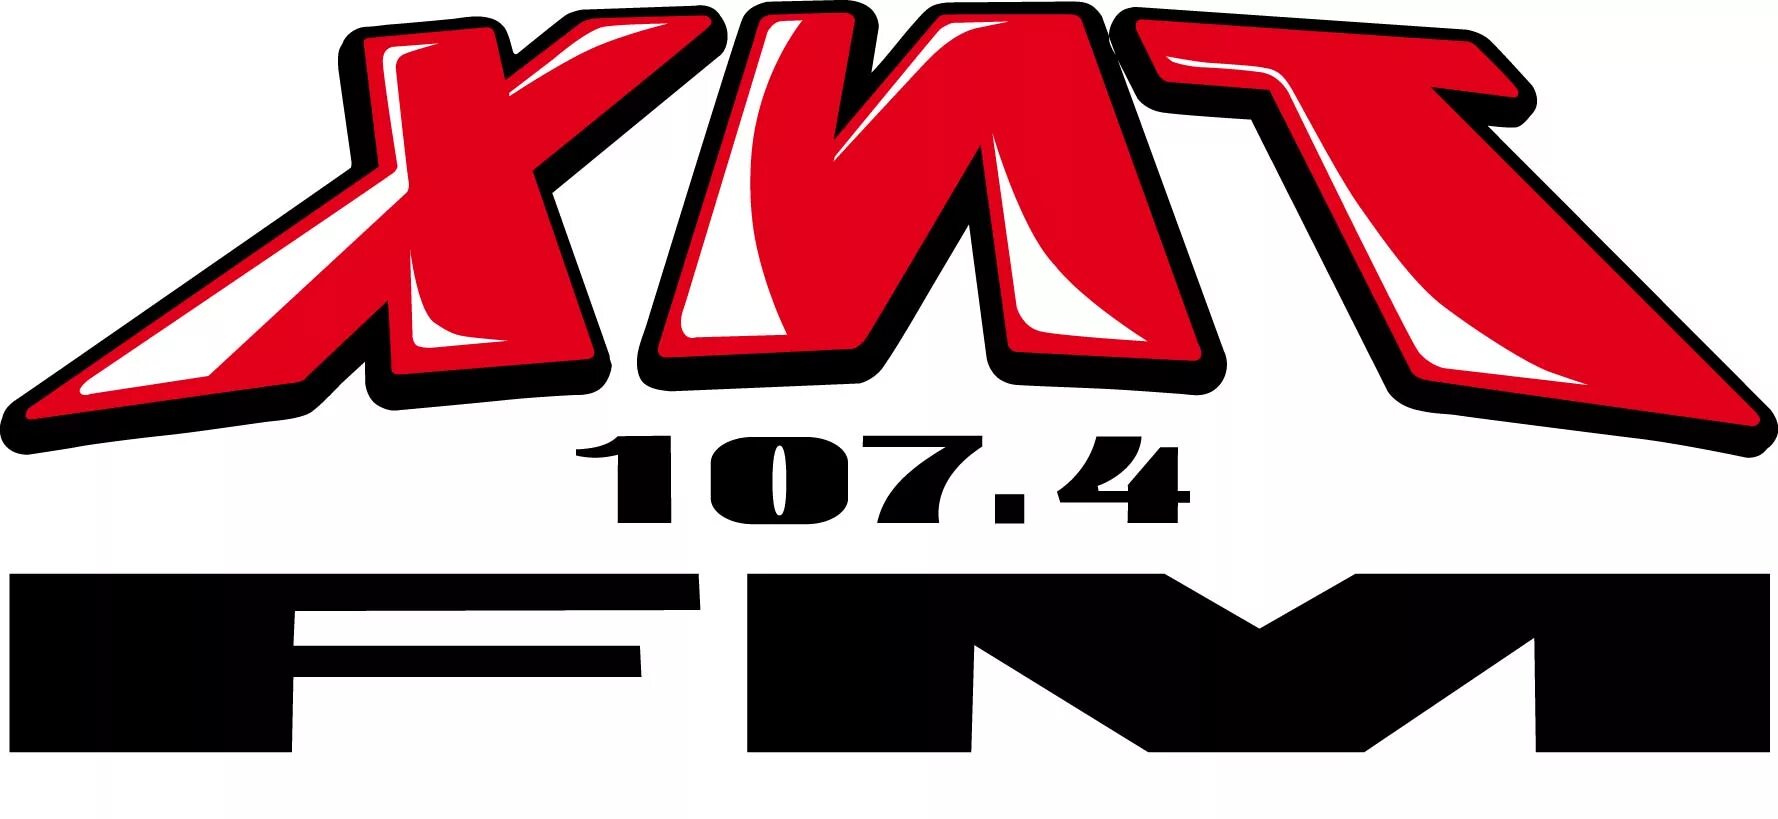 Логотип радиостанции хит ФМ. Хит fm 107.4. Радио хит fm логотип. Хиты радиостанции хит ФМ. Музыка радио хит фм